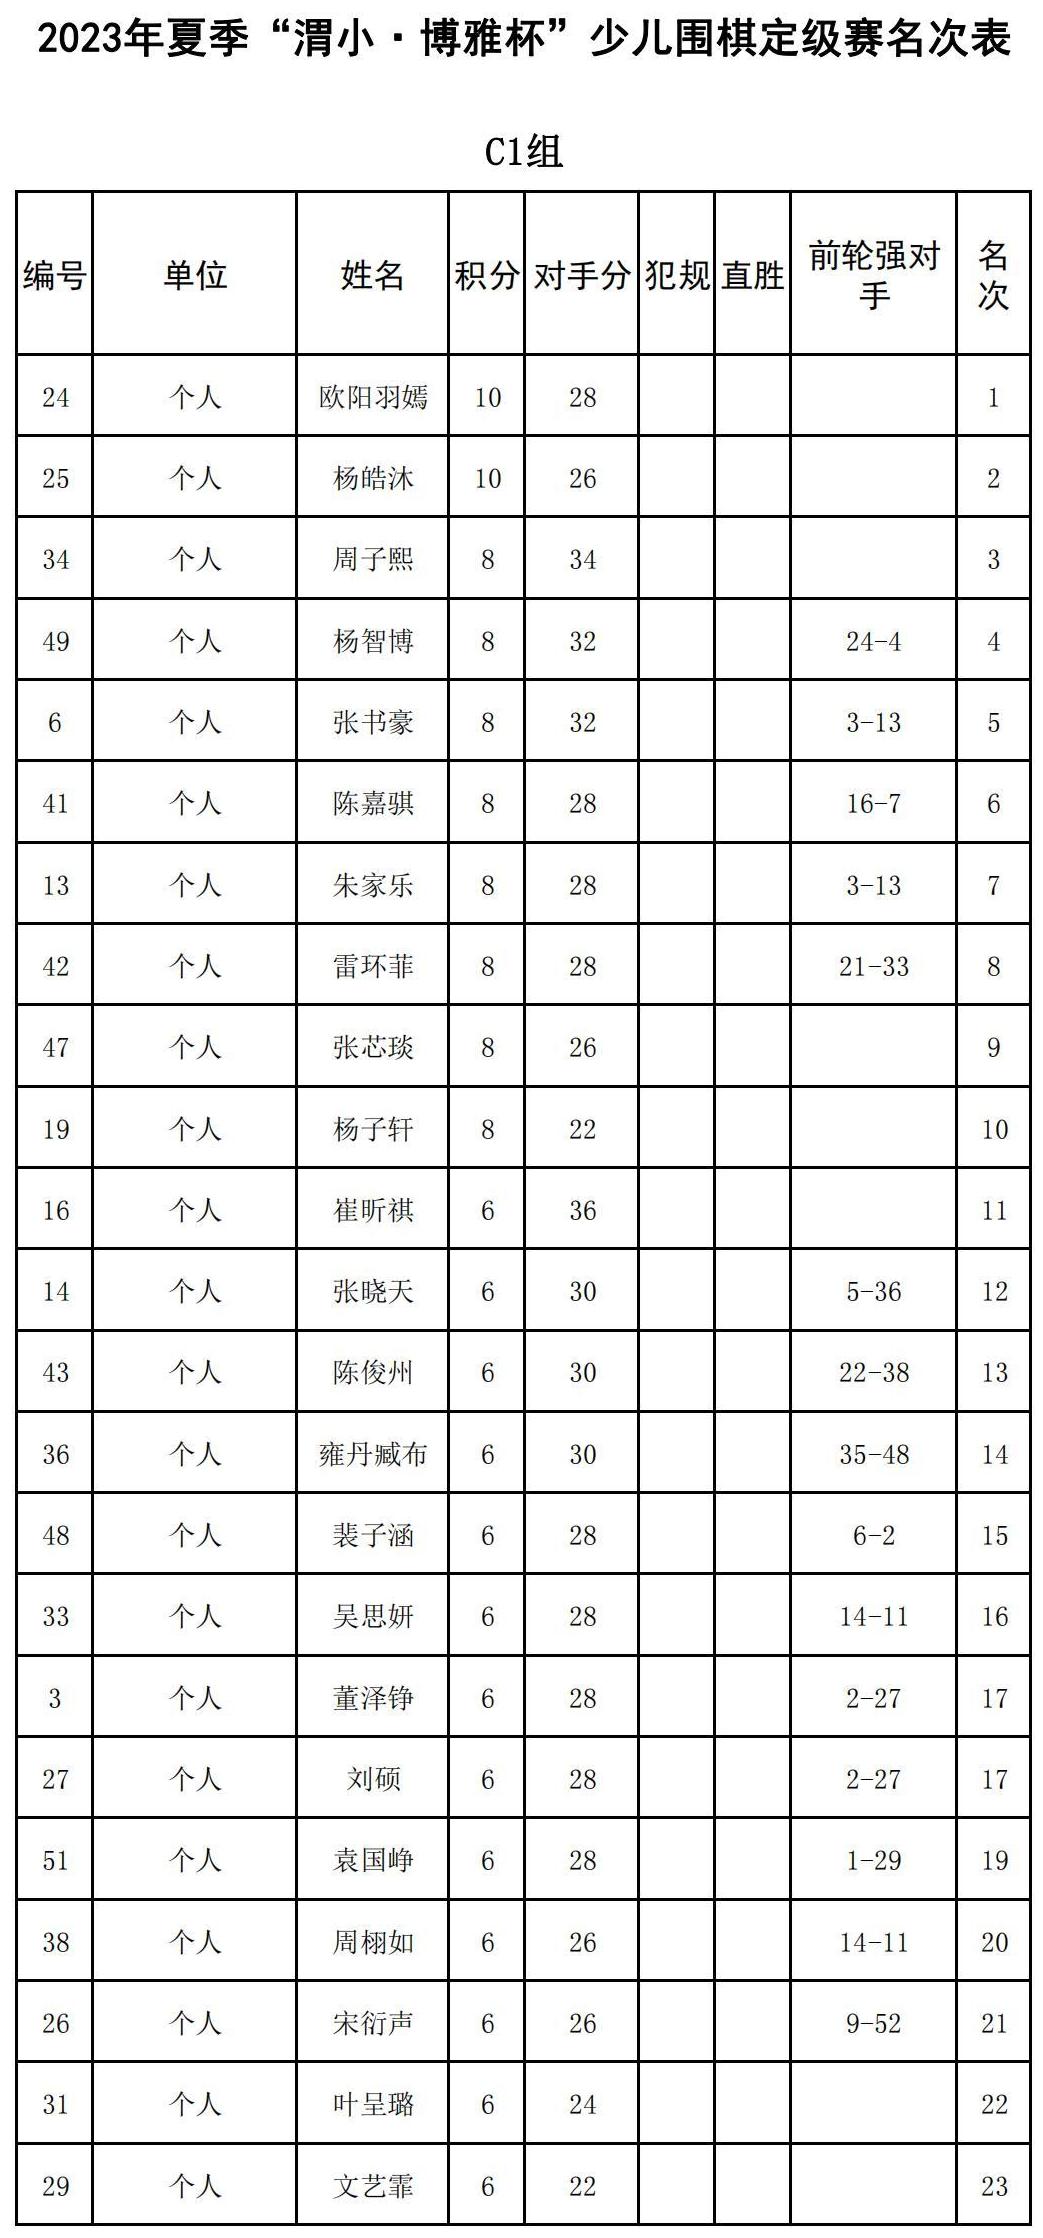 2023年夏季“渭小·博雅杯”少儿围棋定级赛C1组(名次表)_00.jpg